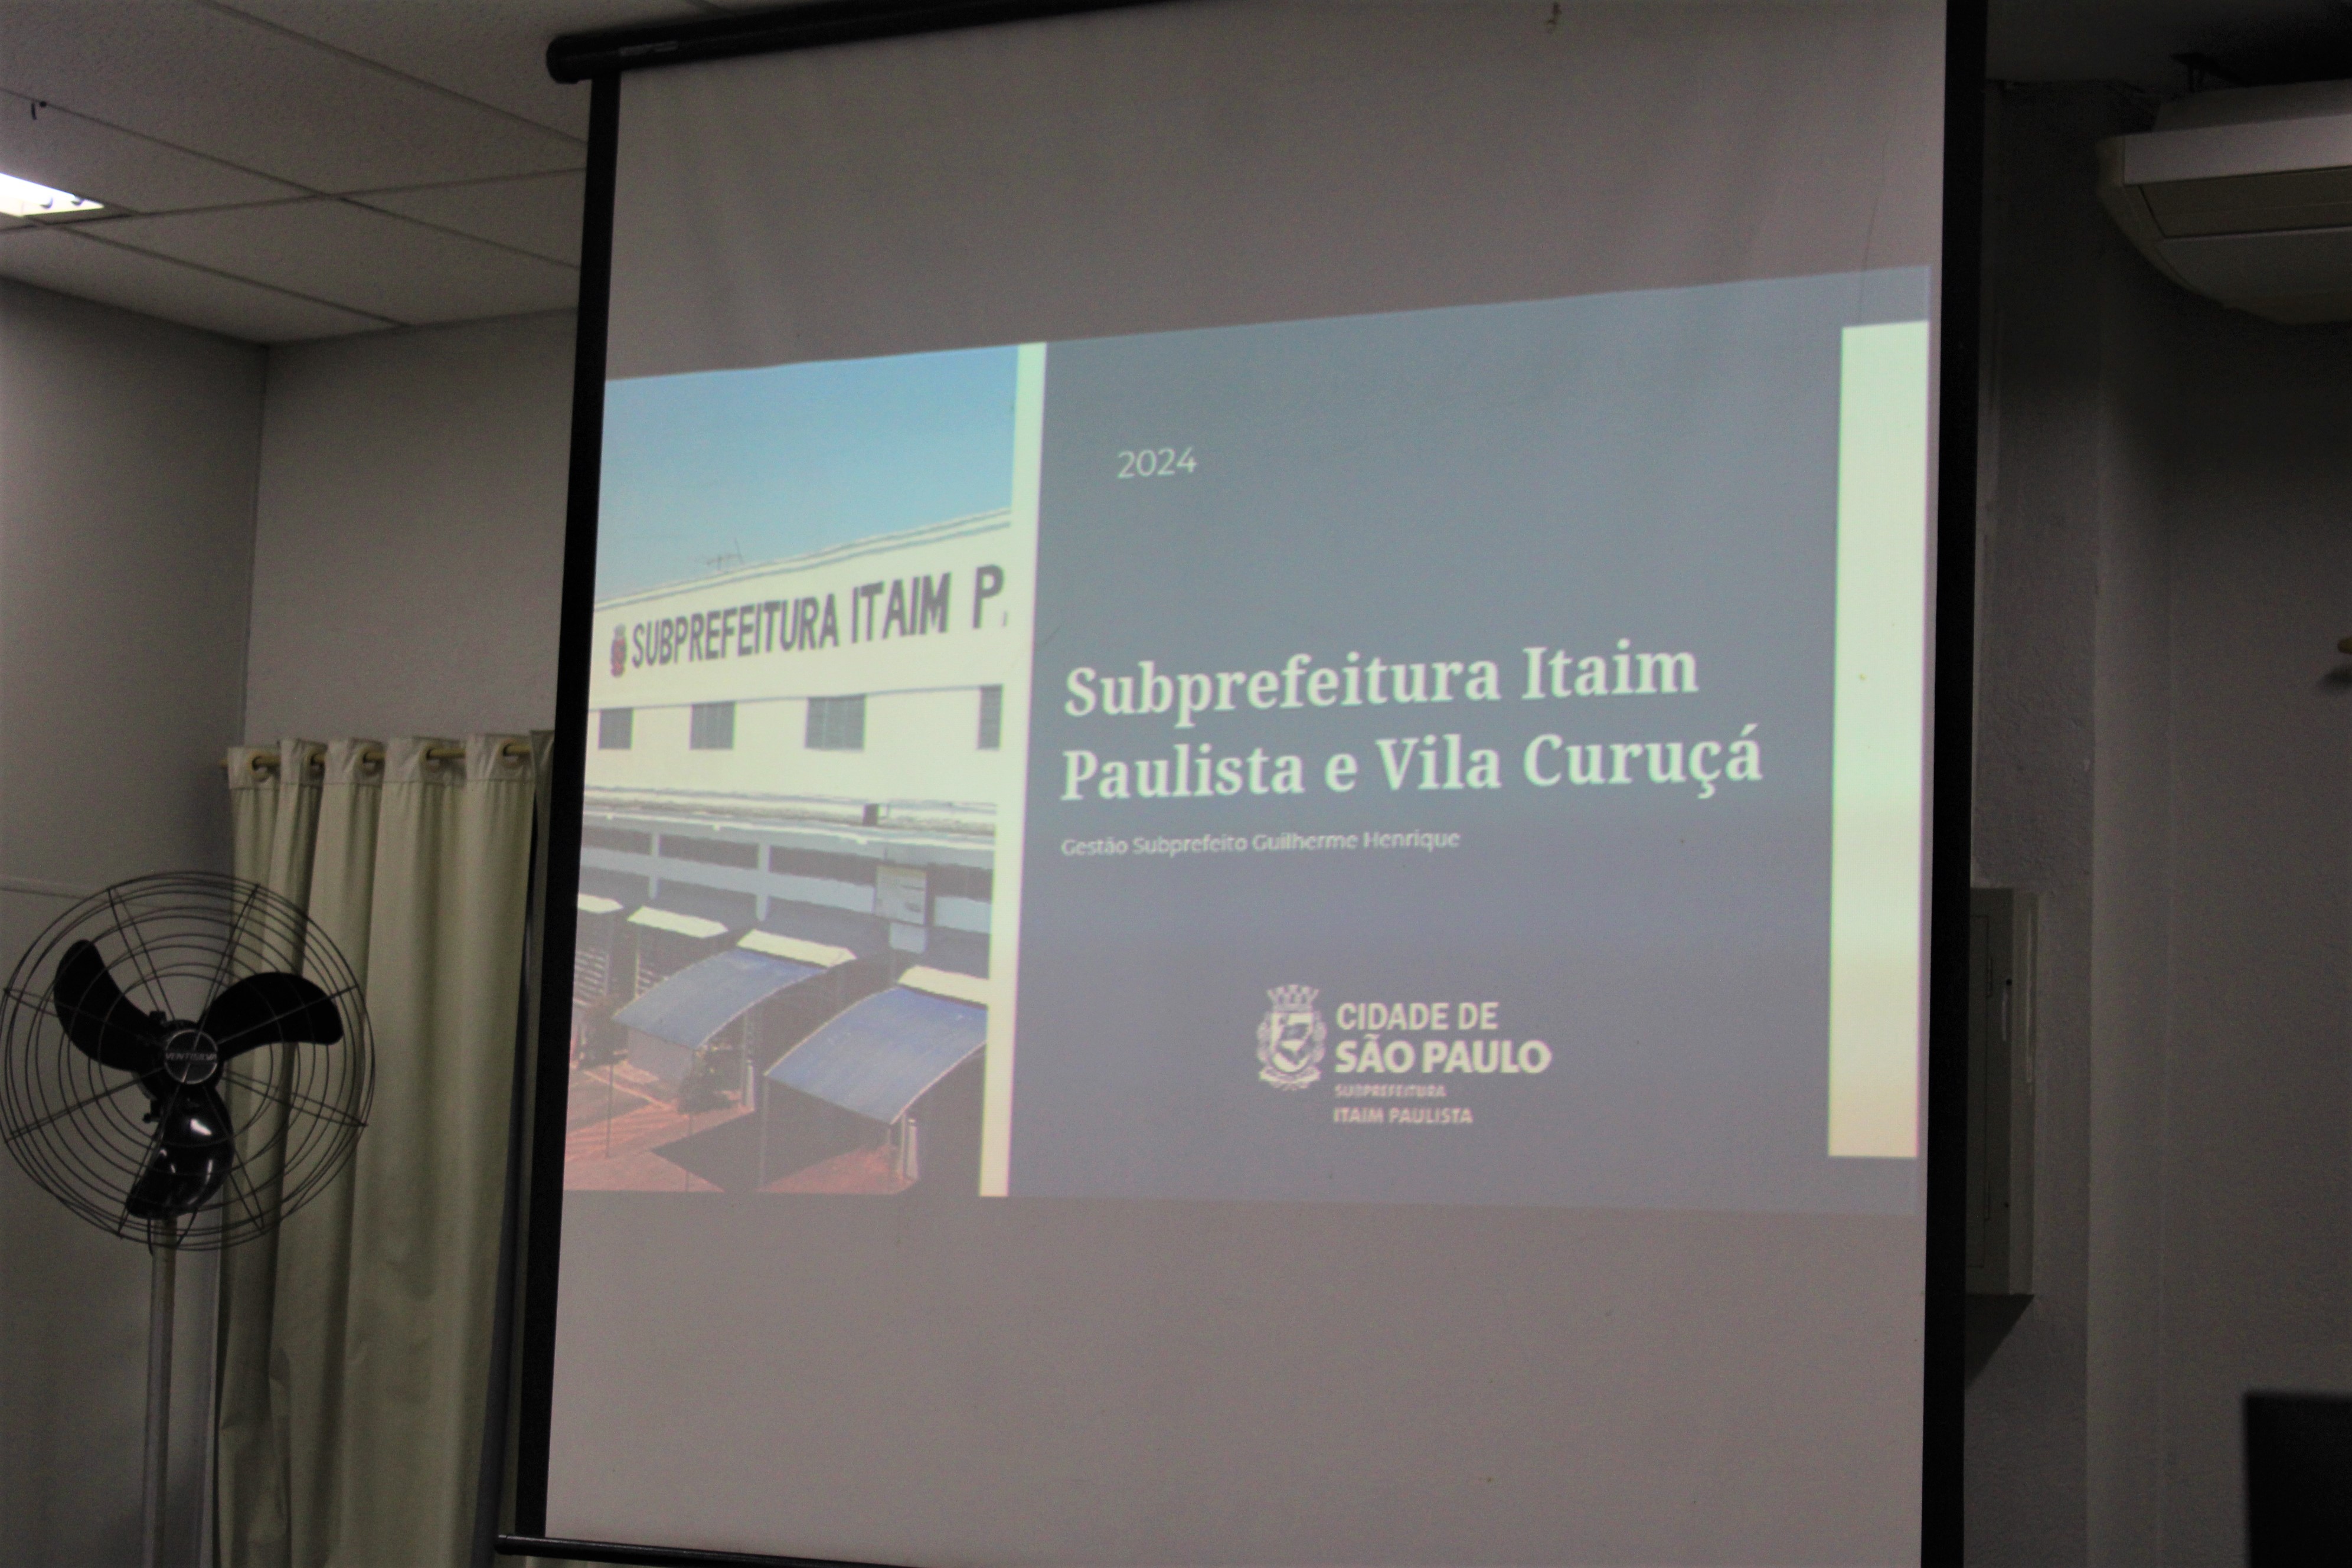 Foto de uma apresentação em um telão com os escritos: Subprefeitura Itaim Paulista e Vila Curuçá. Gestão do Subprefeito Guilherme Henrique.